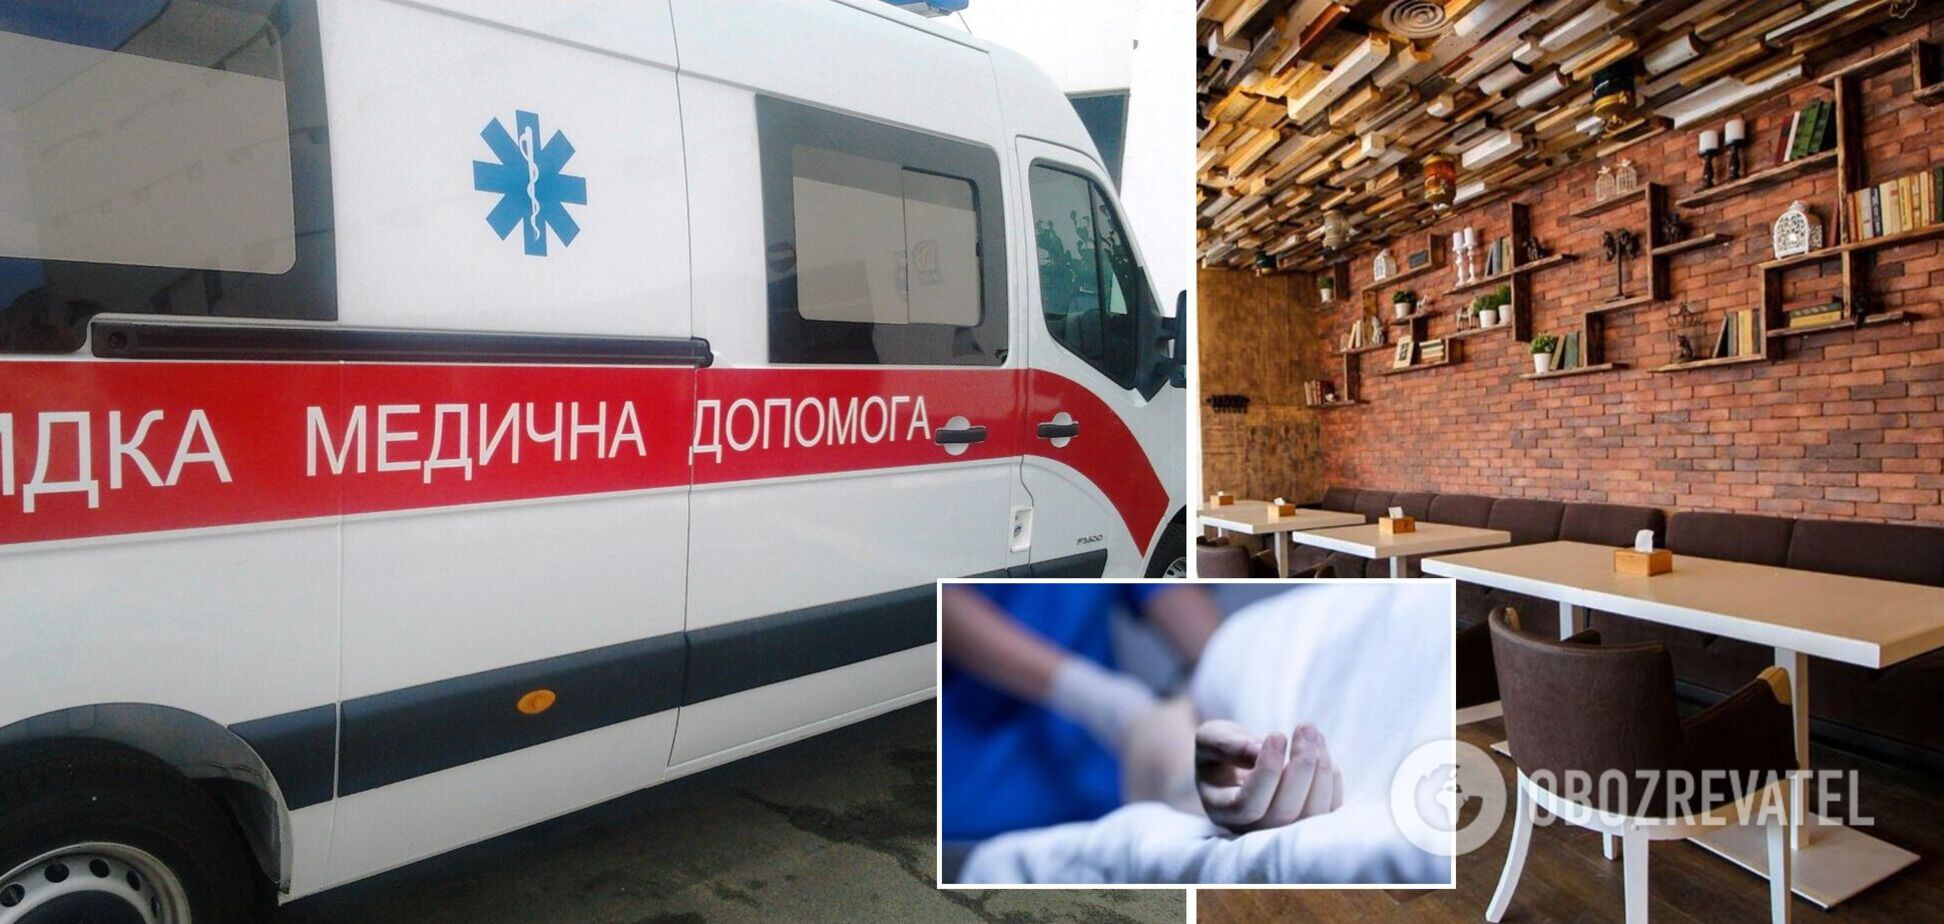 Швидка їхала 20 хвилин: в Одесі в кафе помер 17-річний хлопець